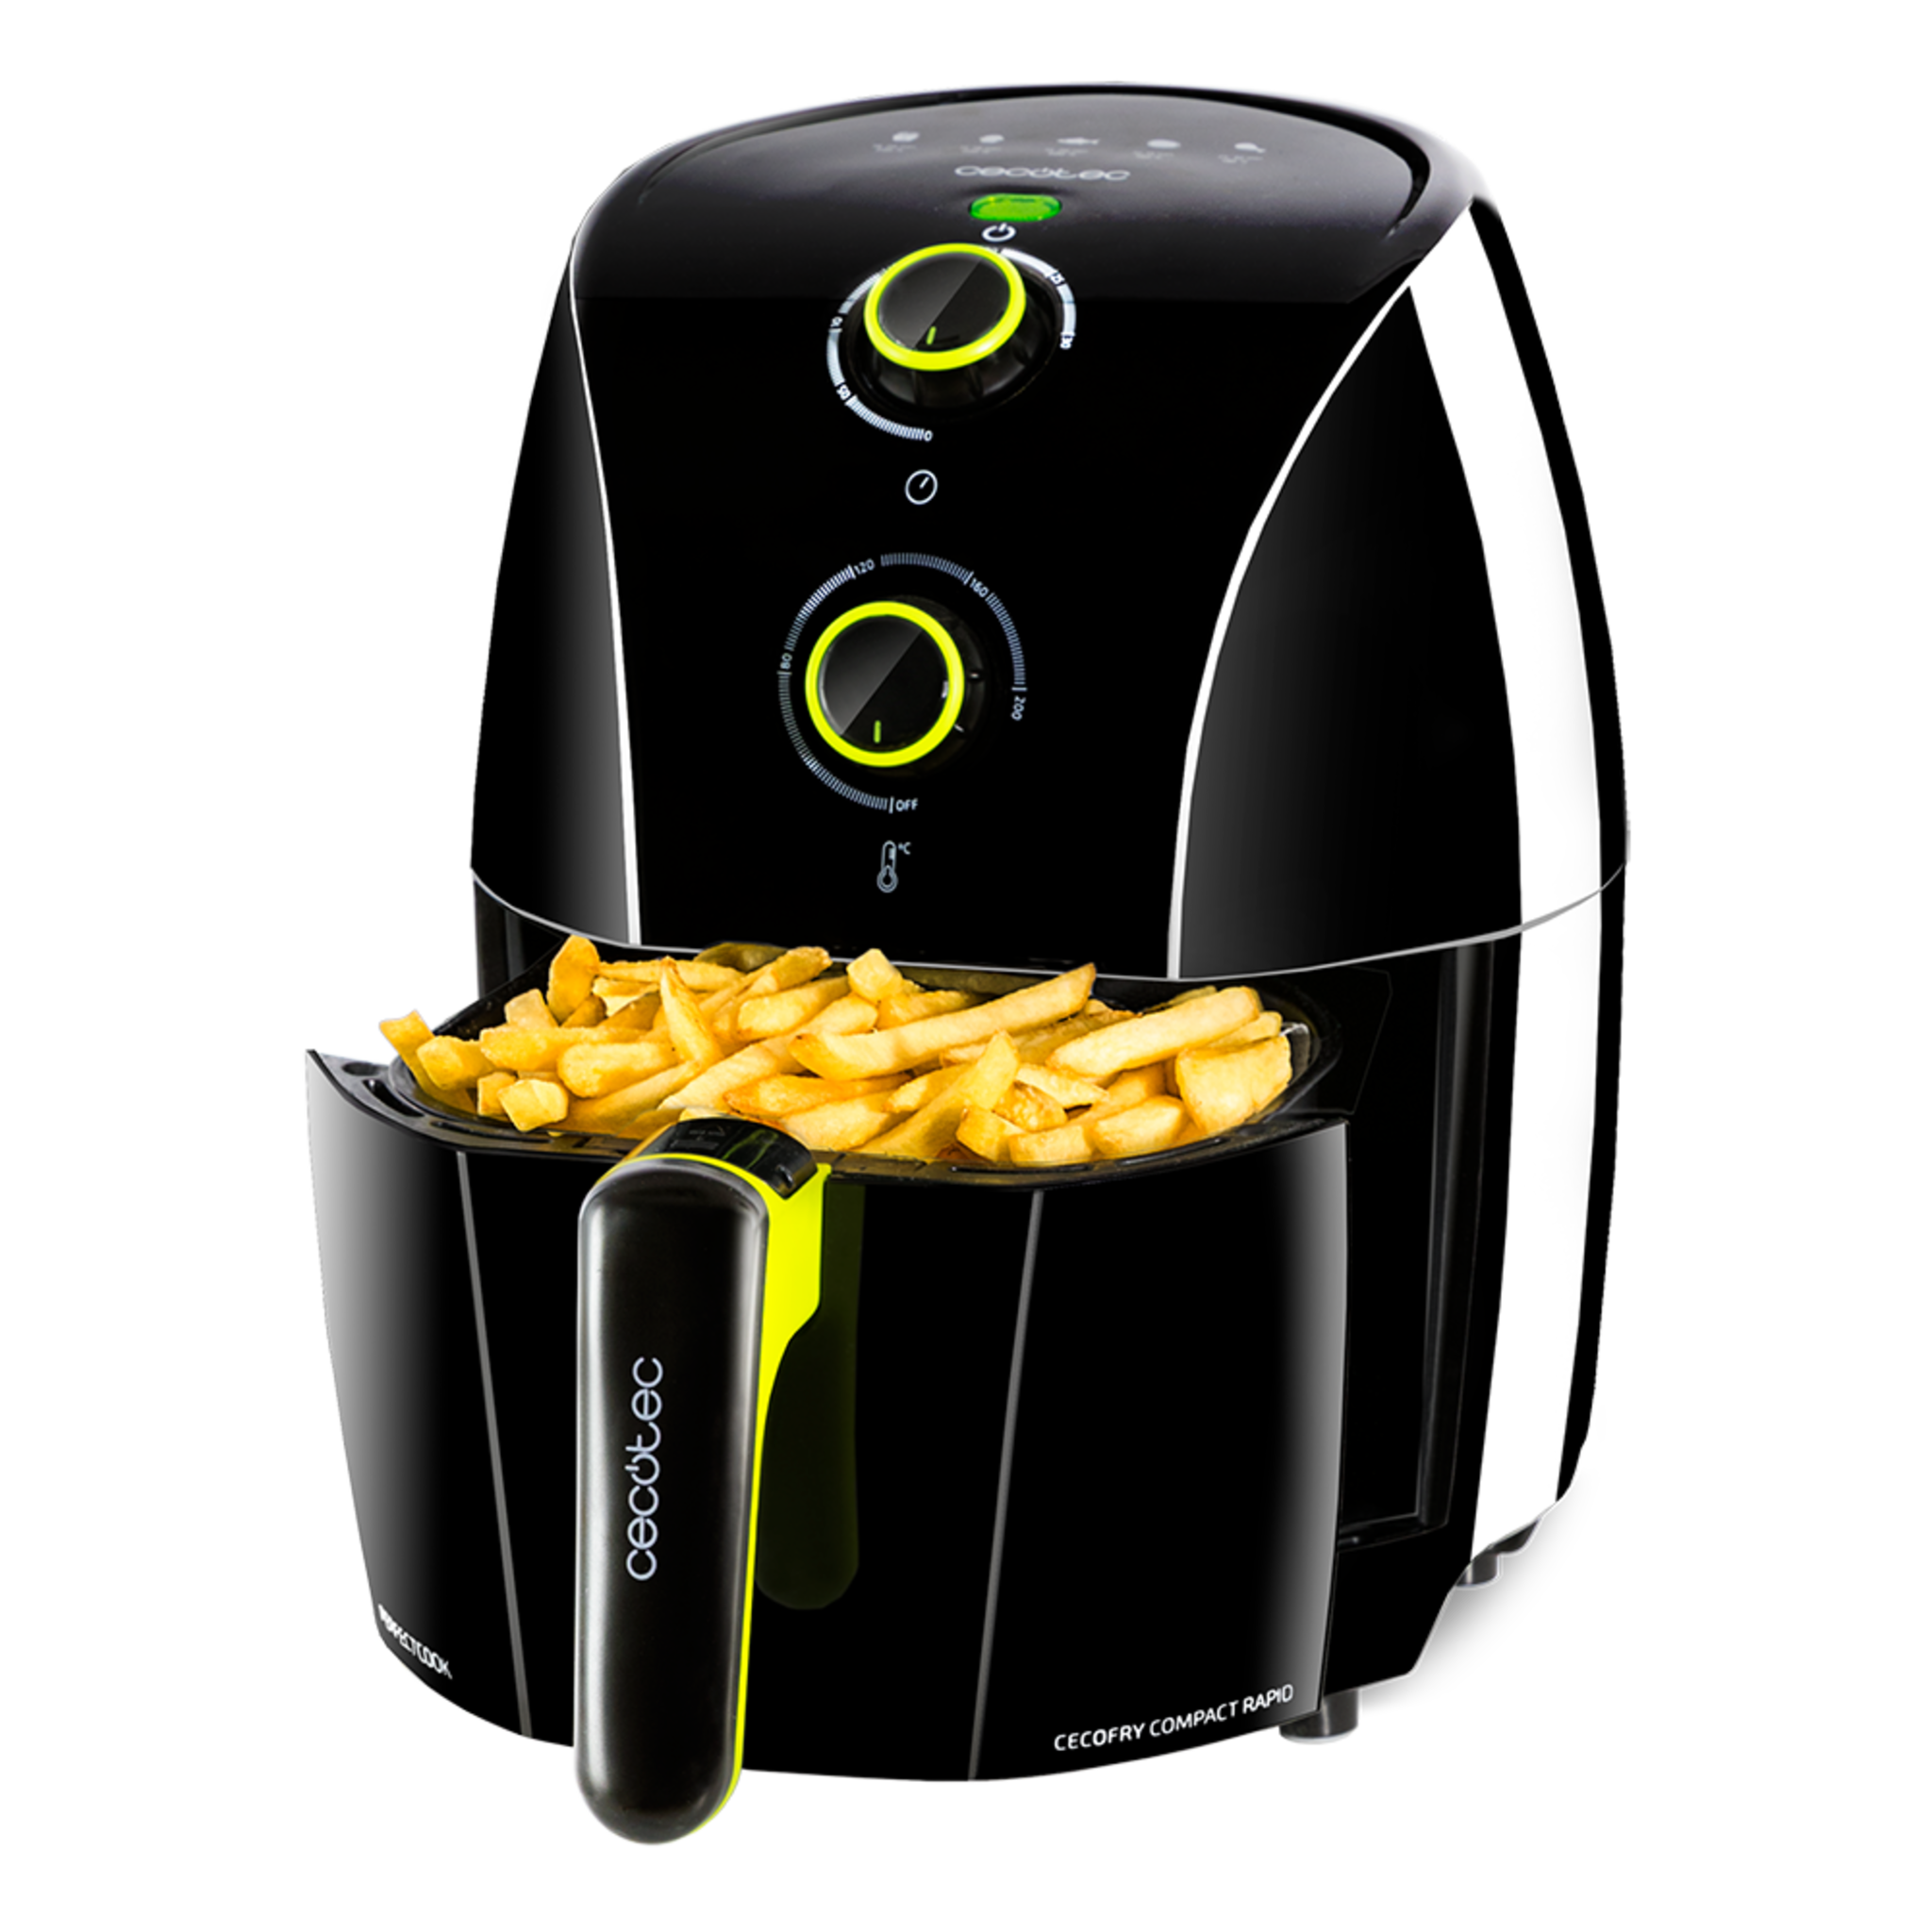 Friggitrice ad aria compatta Cecofry Compact Rapid Black Capienza per 400 g di patate, temperatura 200 ºC, tempo regolabile 0-30 min, include ricettario